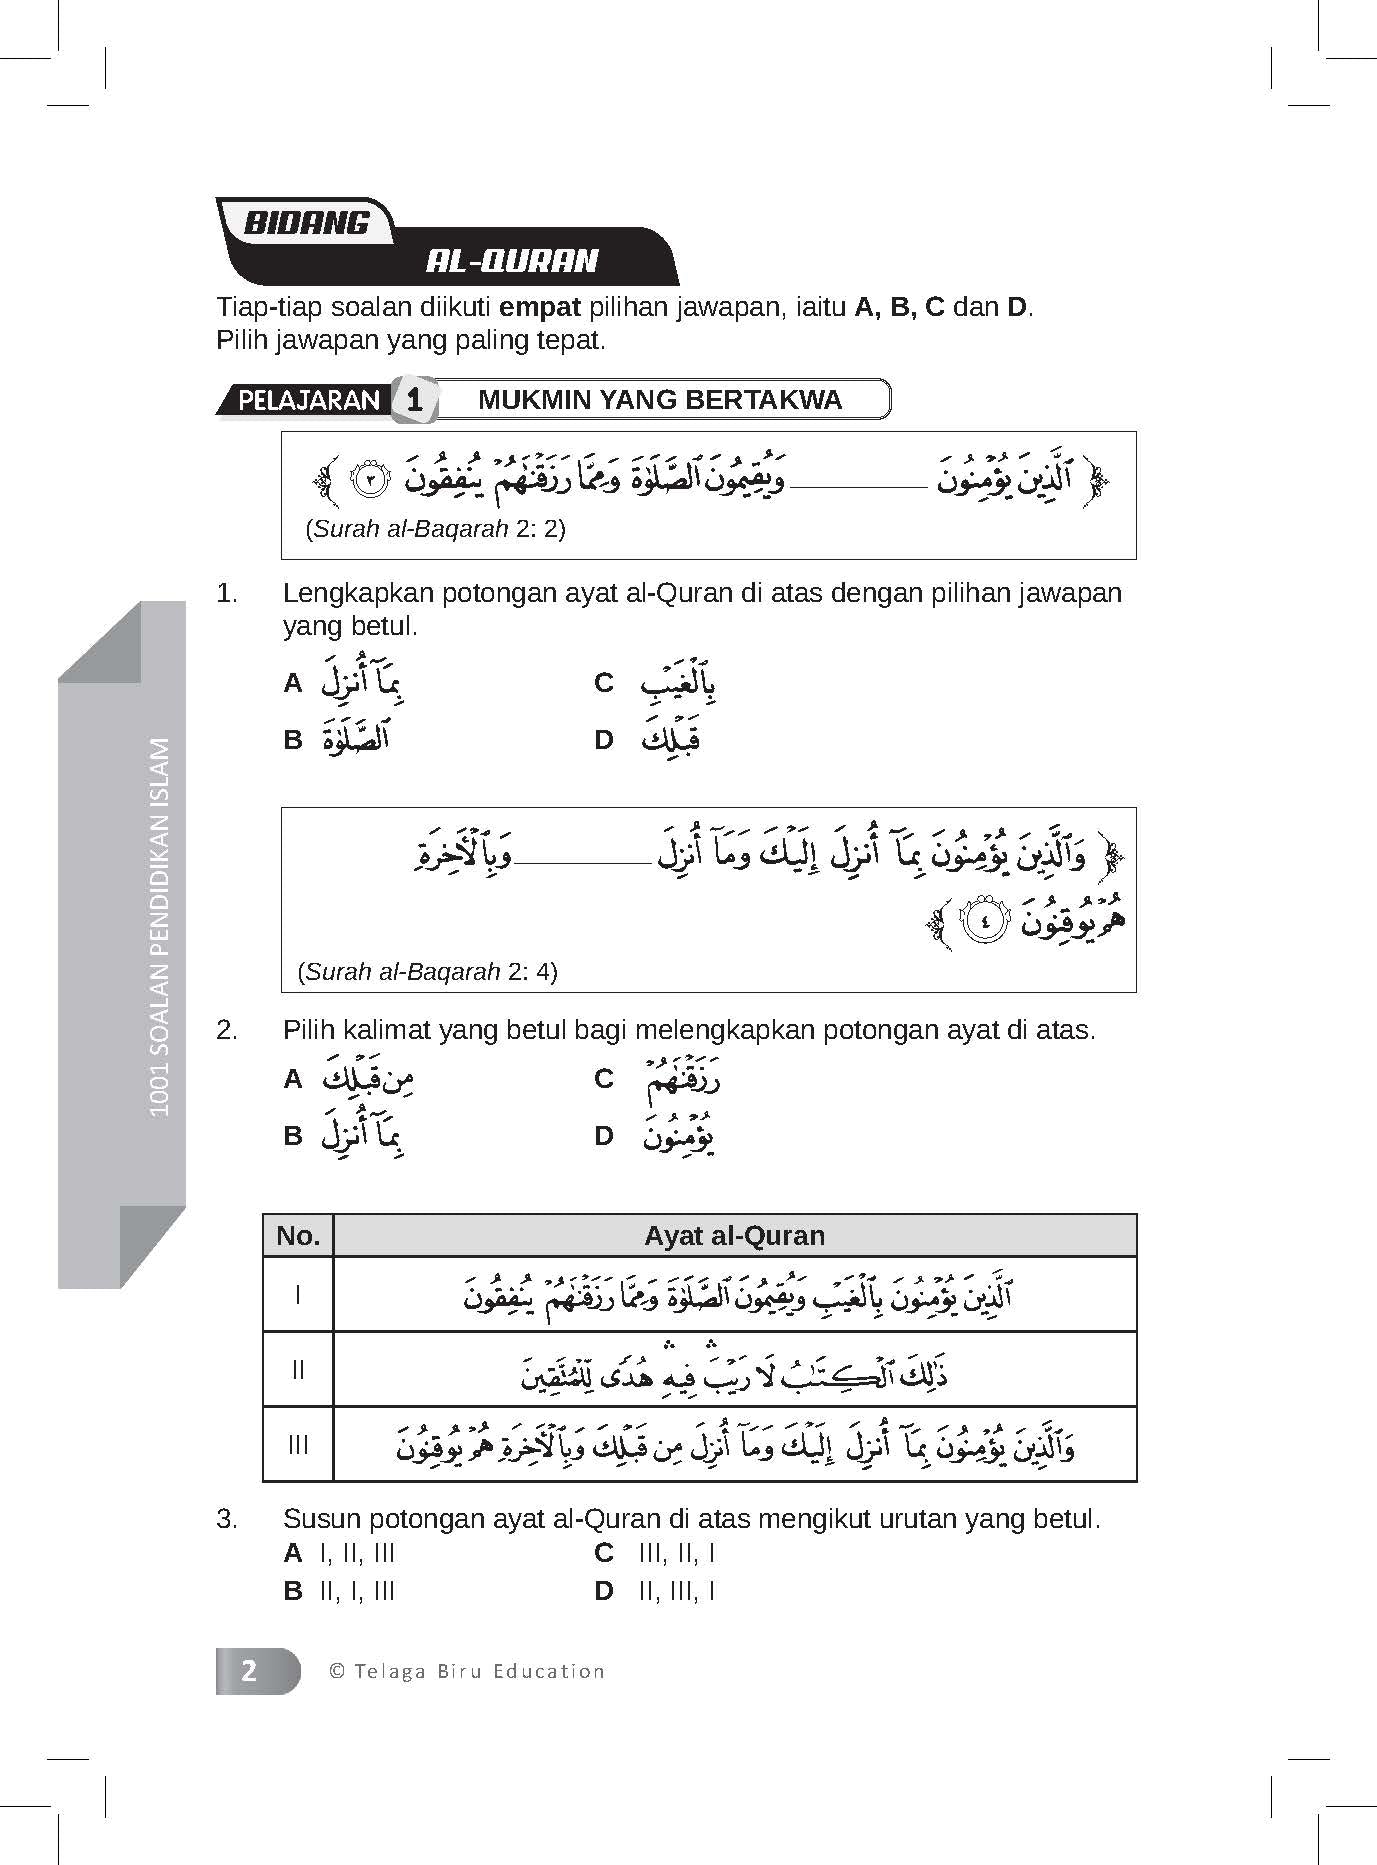 1001 Soalan Pendidikan Islam  Tingkatan 1,2 & 3 -  (TBBS1305)